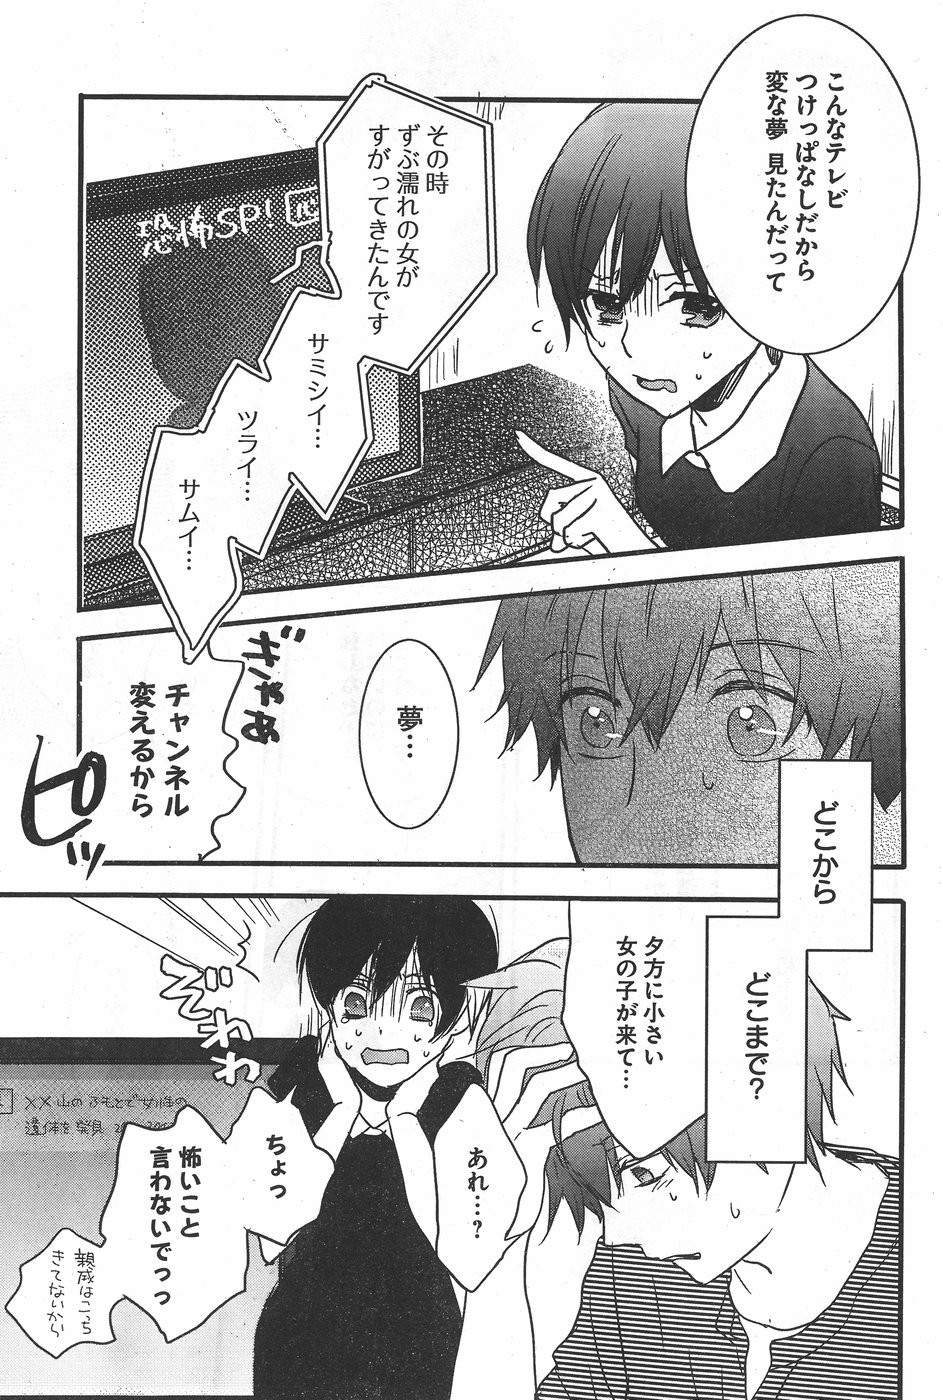 Bokura wa Minna Kawaisou - Chapter 75 - Page 20